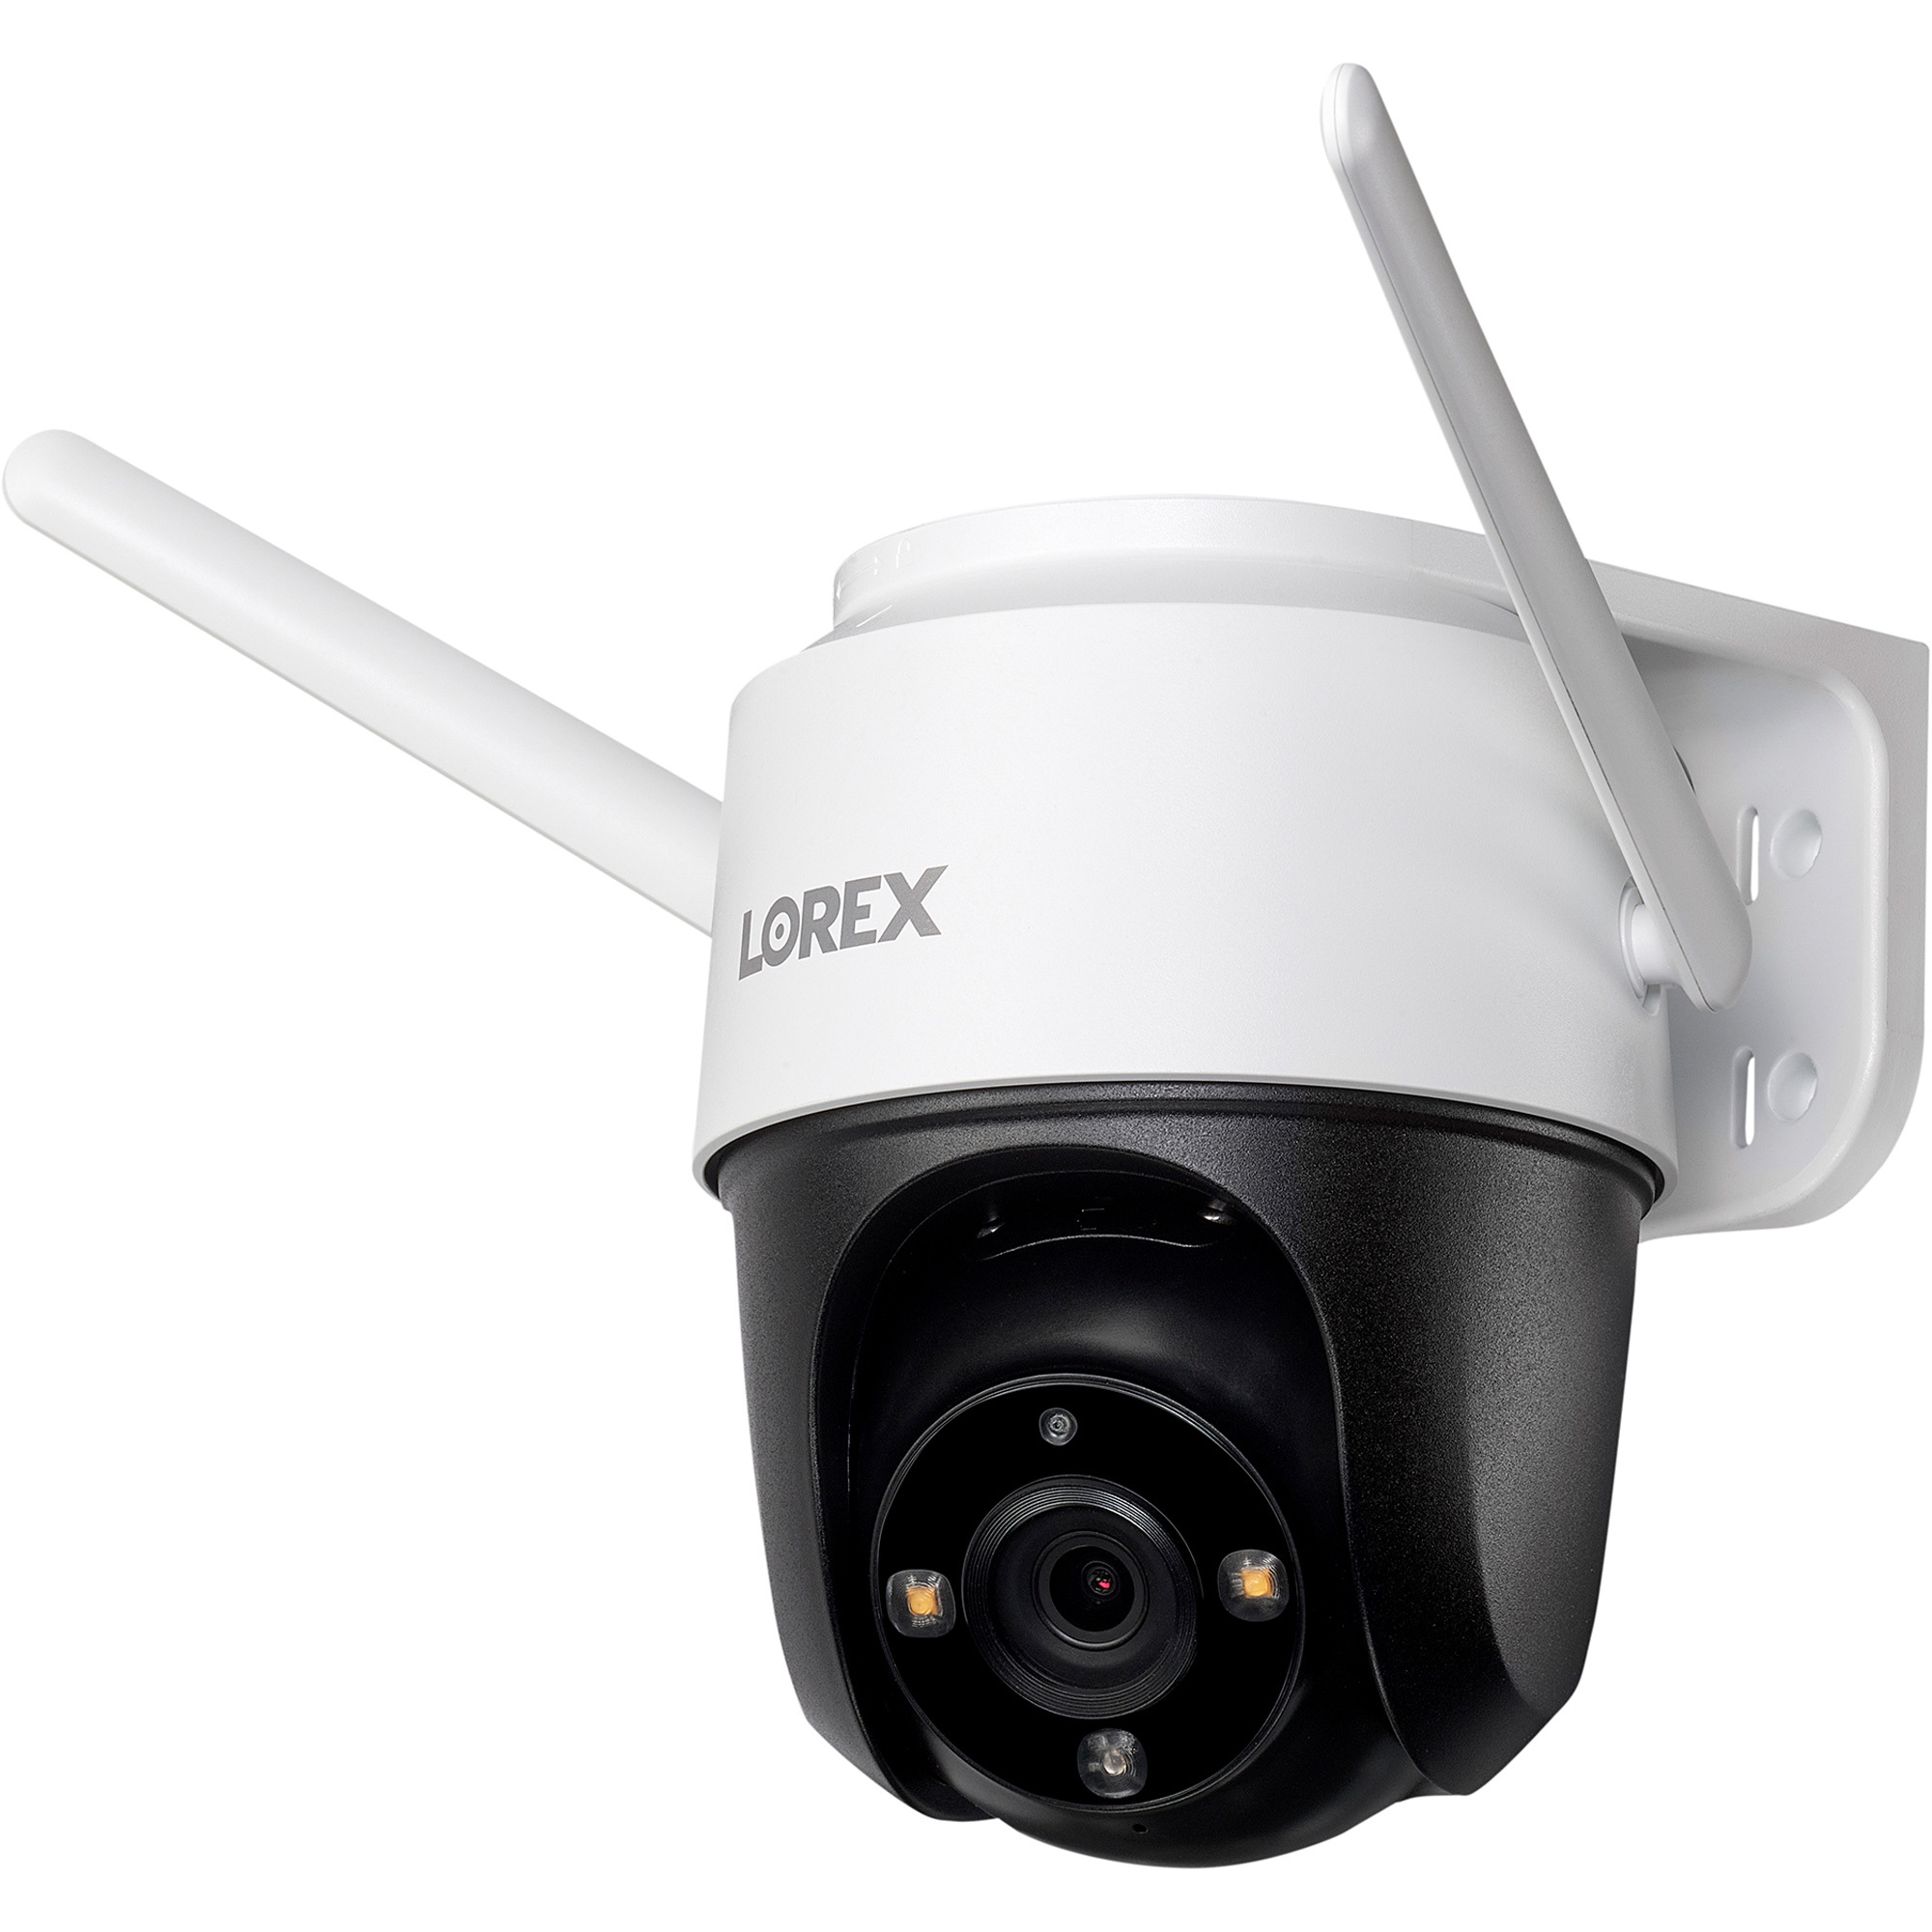 Lorex 2K Pan-Tilt Outdoor Wi-Fi Security Camera â Model F461AQD-E